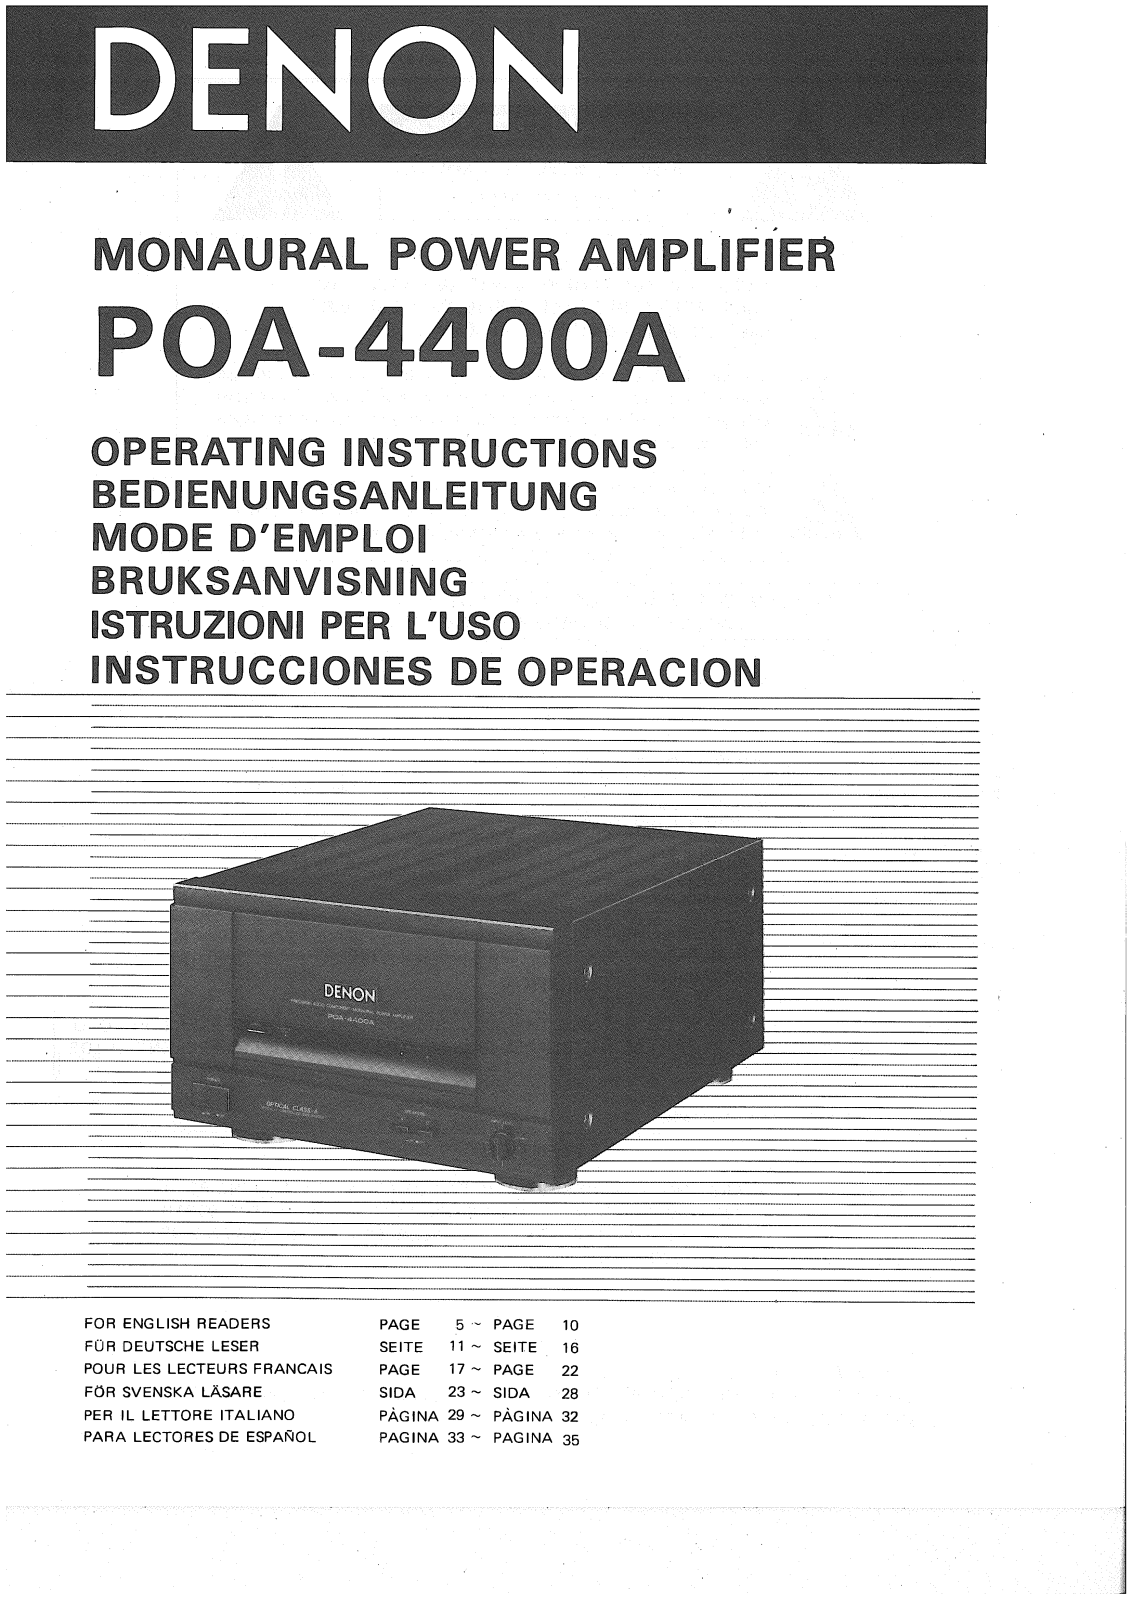 Denon POA-4400A Owner's Manual